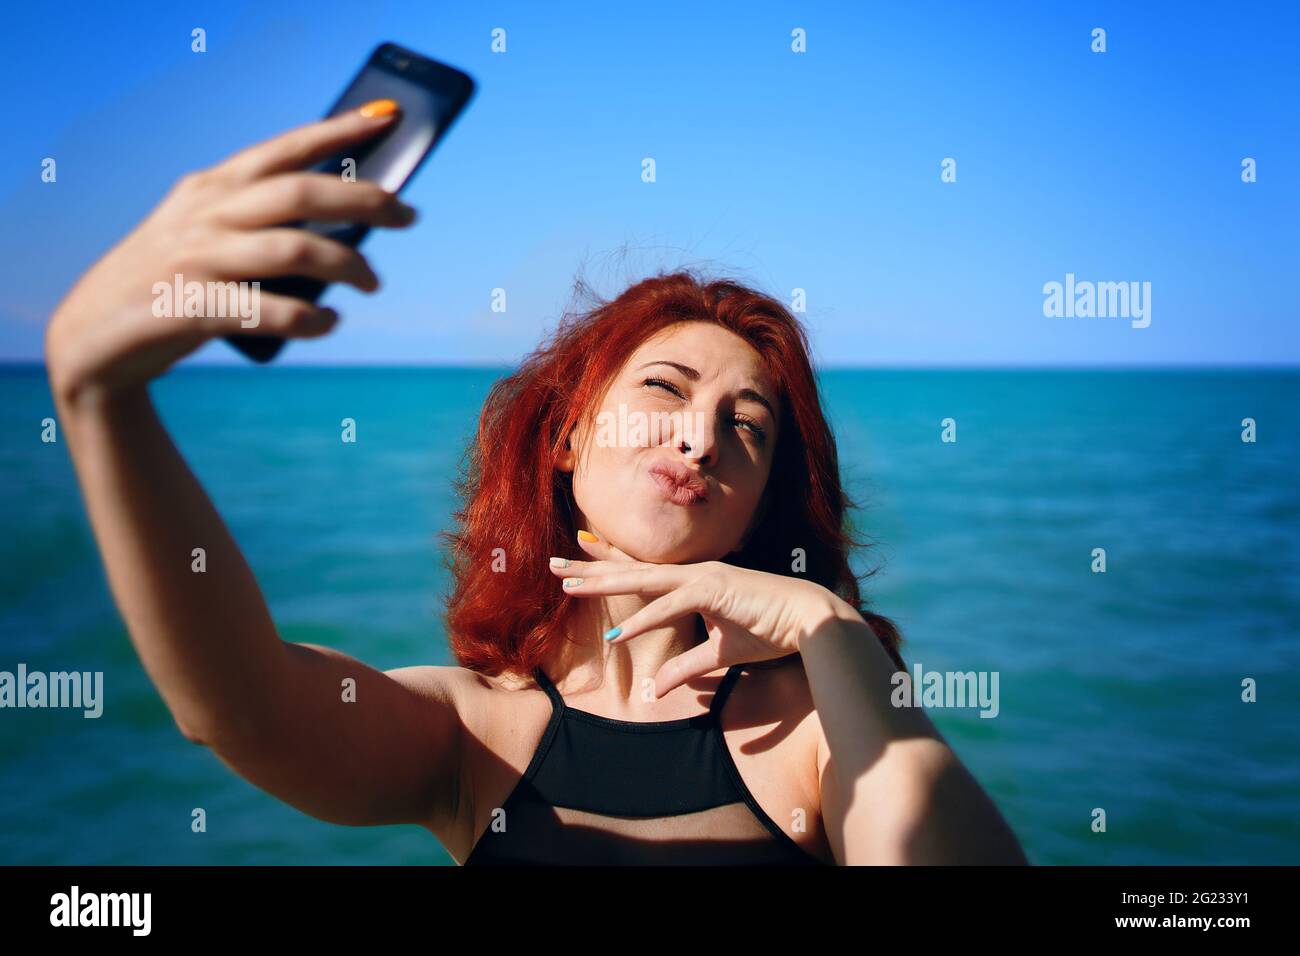 Rothaarige Frau schielt in der Sonne und macht Selfie auf der Smartphone-Kamera. Lippen wie eine Ente. Sonniger Sommertag. Nettes Mädchen macht Bilder von sich selbst vor dem Hintergrund des blauen Meeres und Himmel. Stockfoto